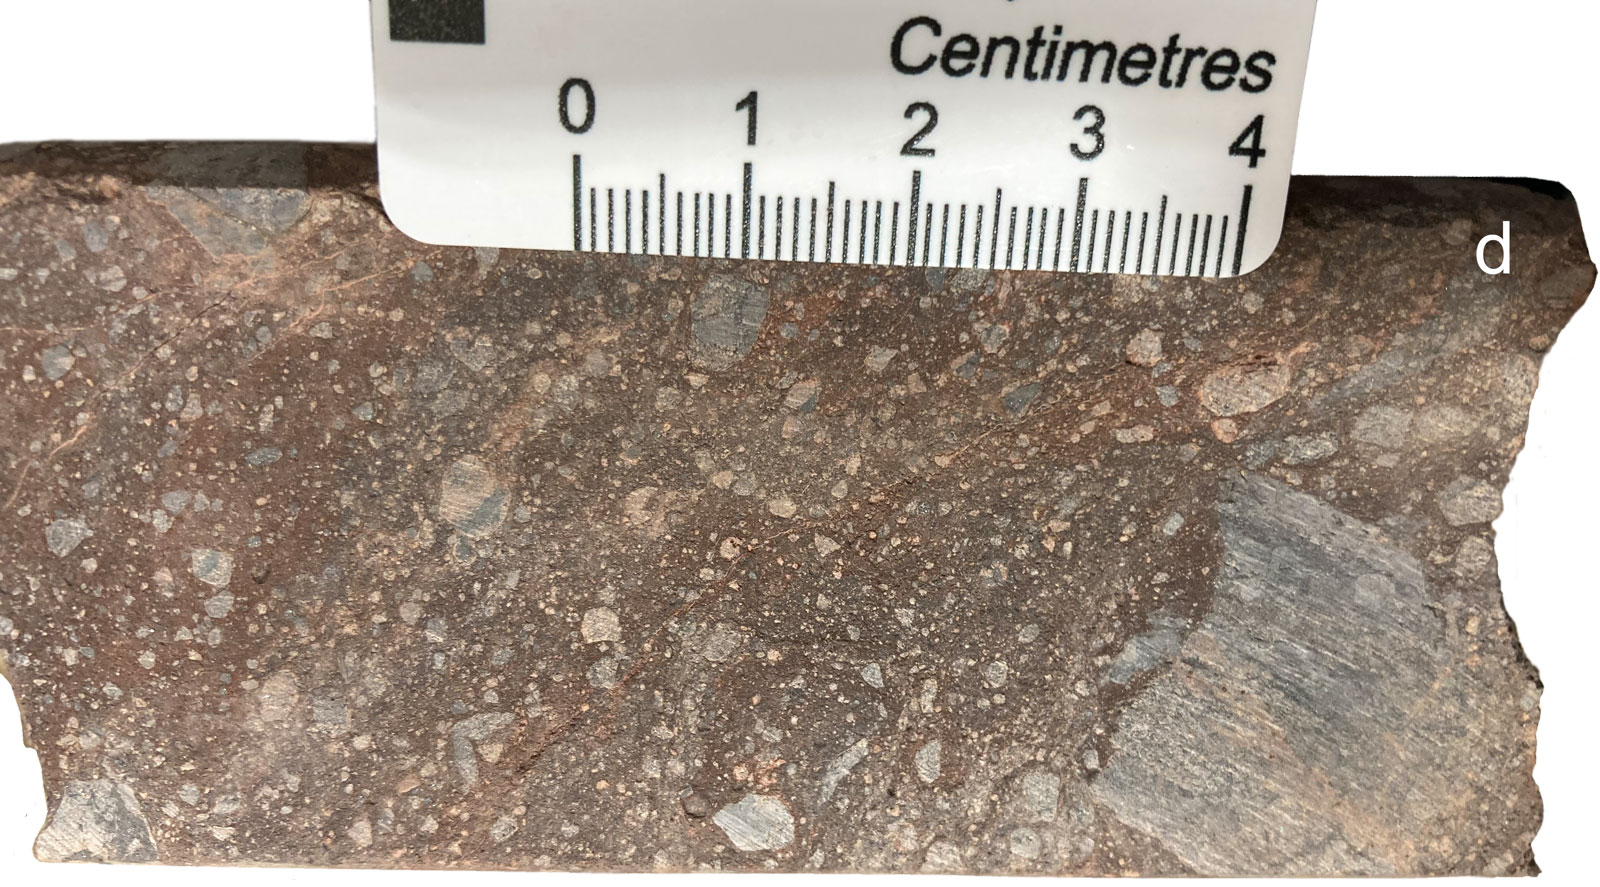 Prominent Hill heterolithic sedimentary breccia